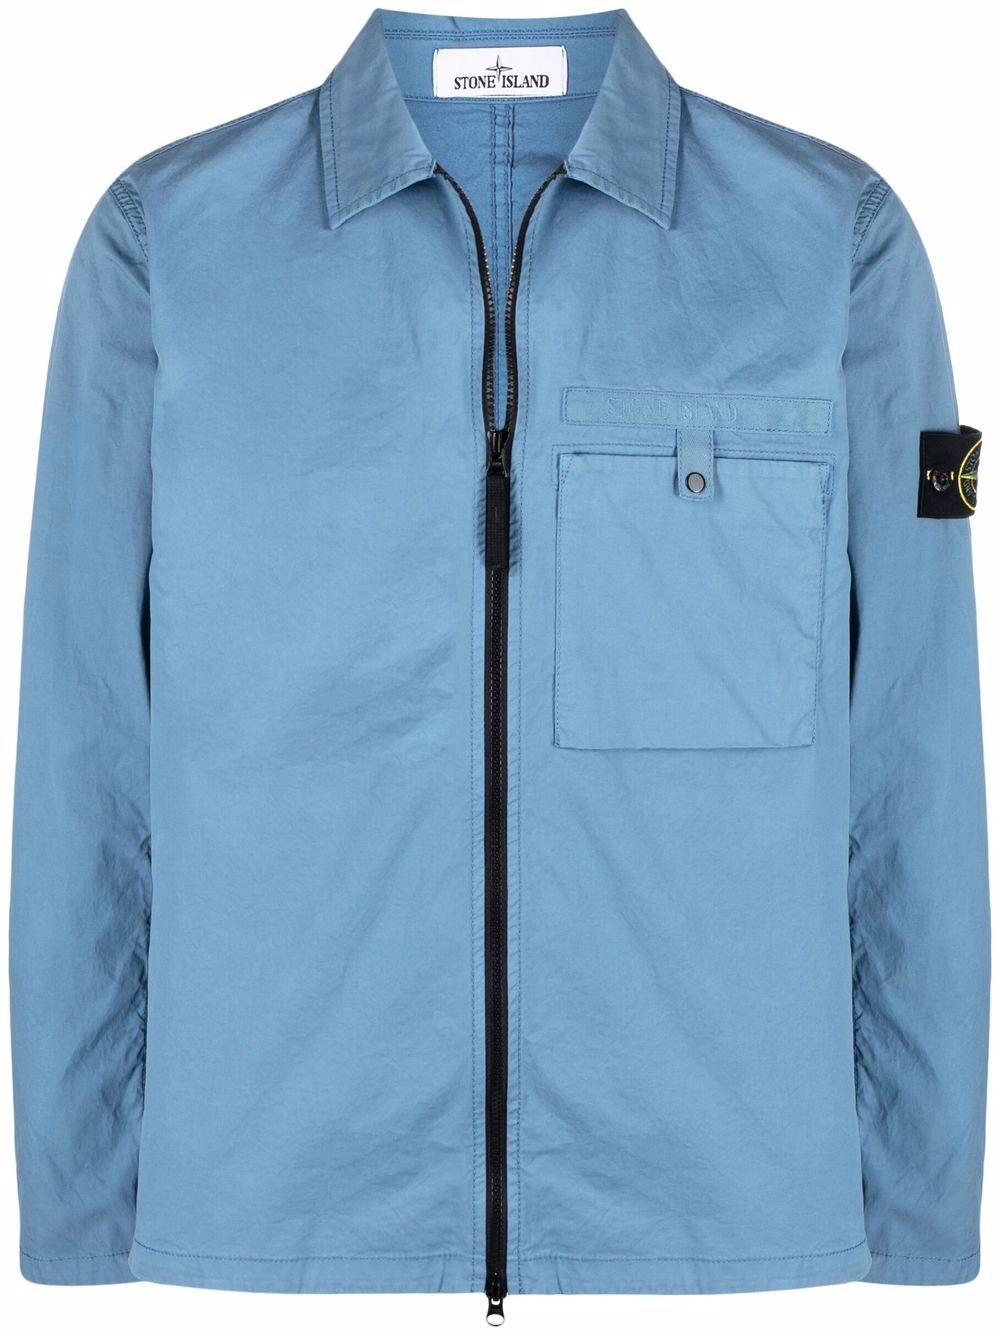 STONE ISLAND Overshirt Jacket Blue - MAISONDEFASHION.COM